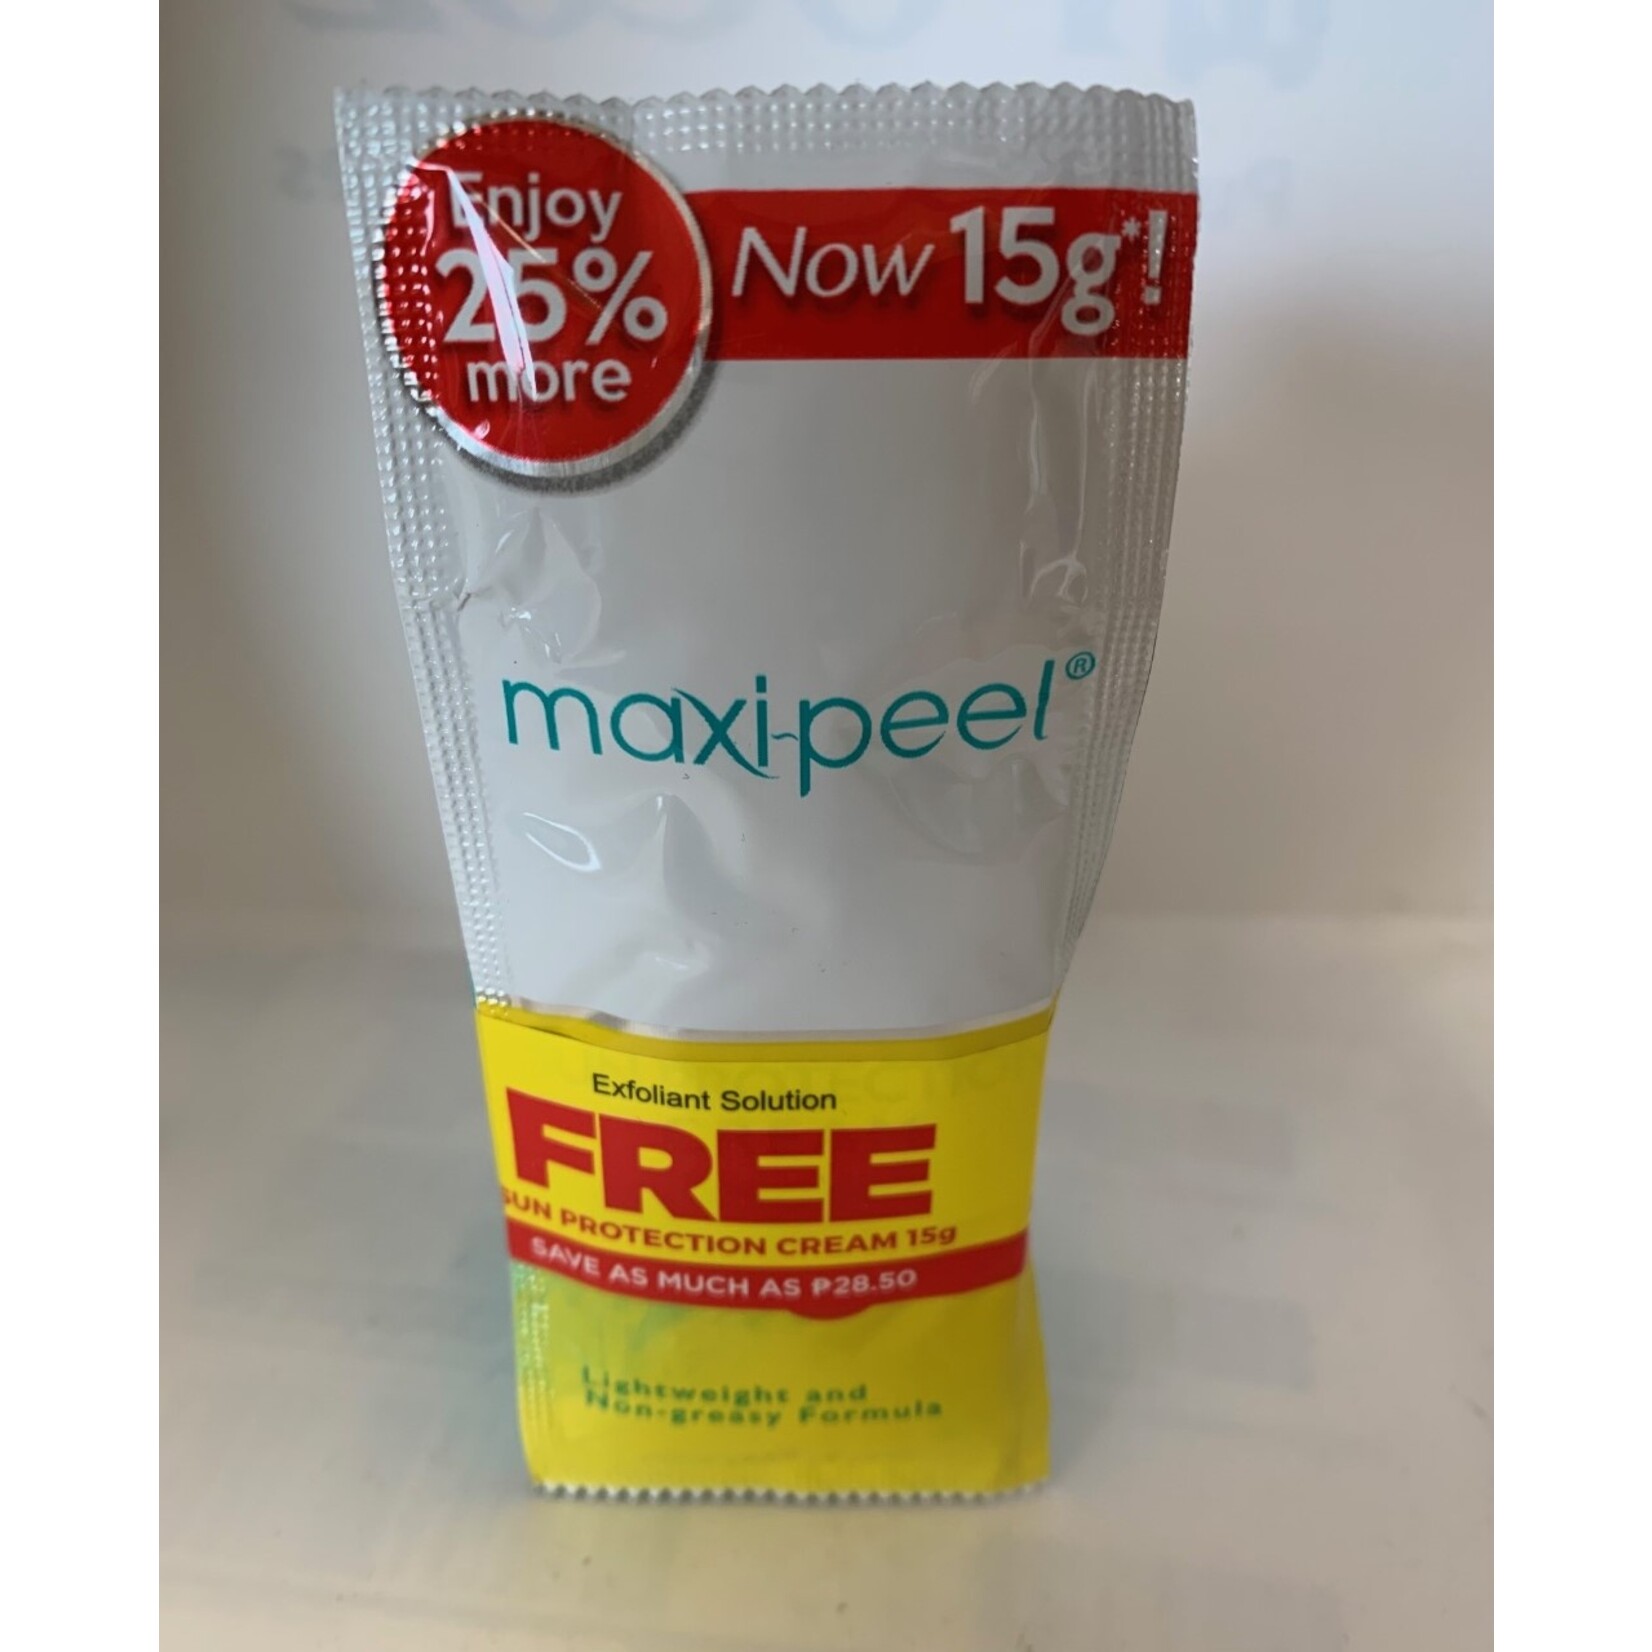 Maxi-Peel, biedt een passend product voor al jouw huidbehoeften! Maxi-Peel Tretinoin hydroquinone exfoliant  solution  nr 2 Nu met gratis 15 gram Sun Protection Cream!